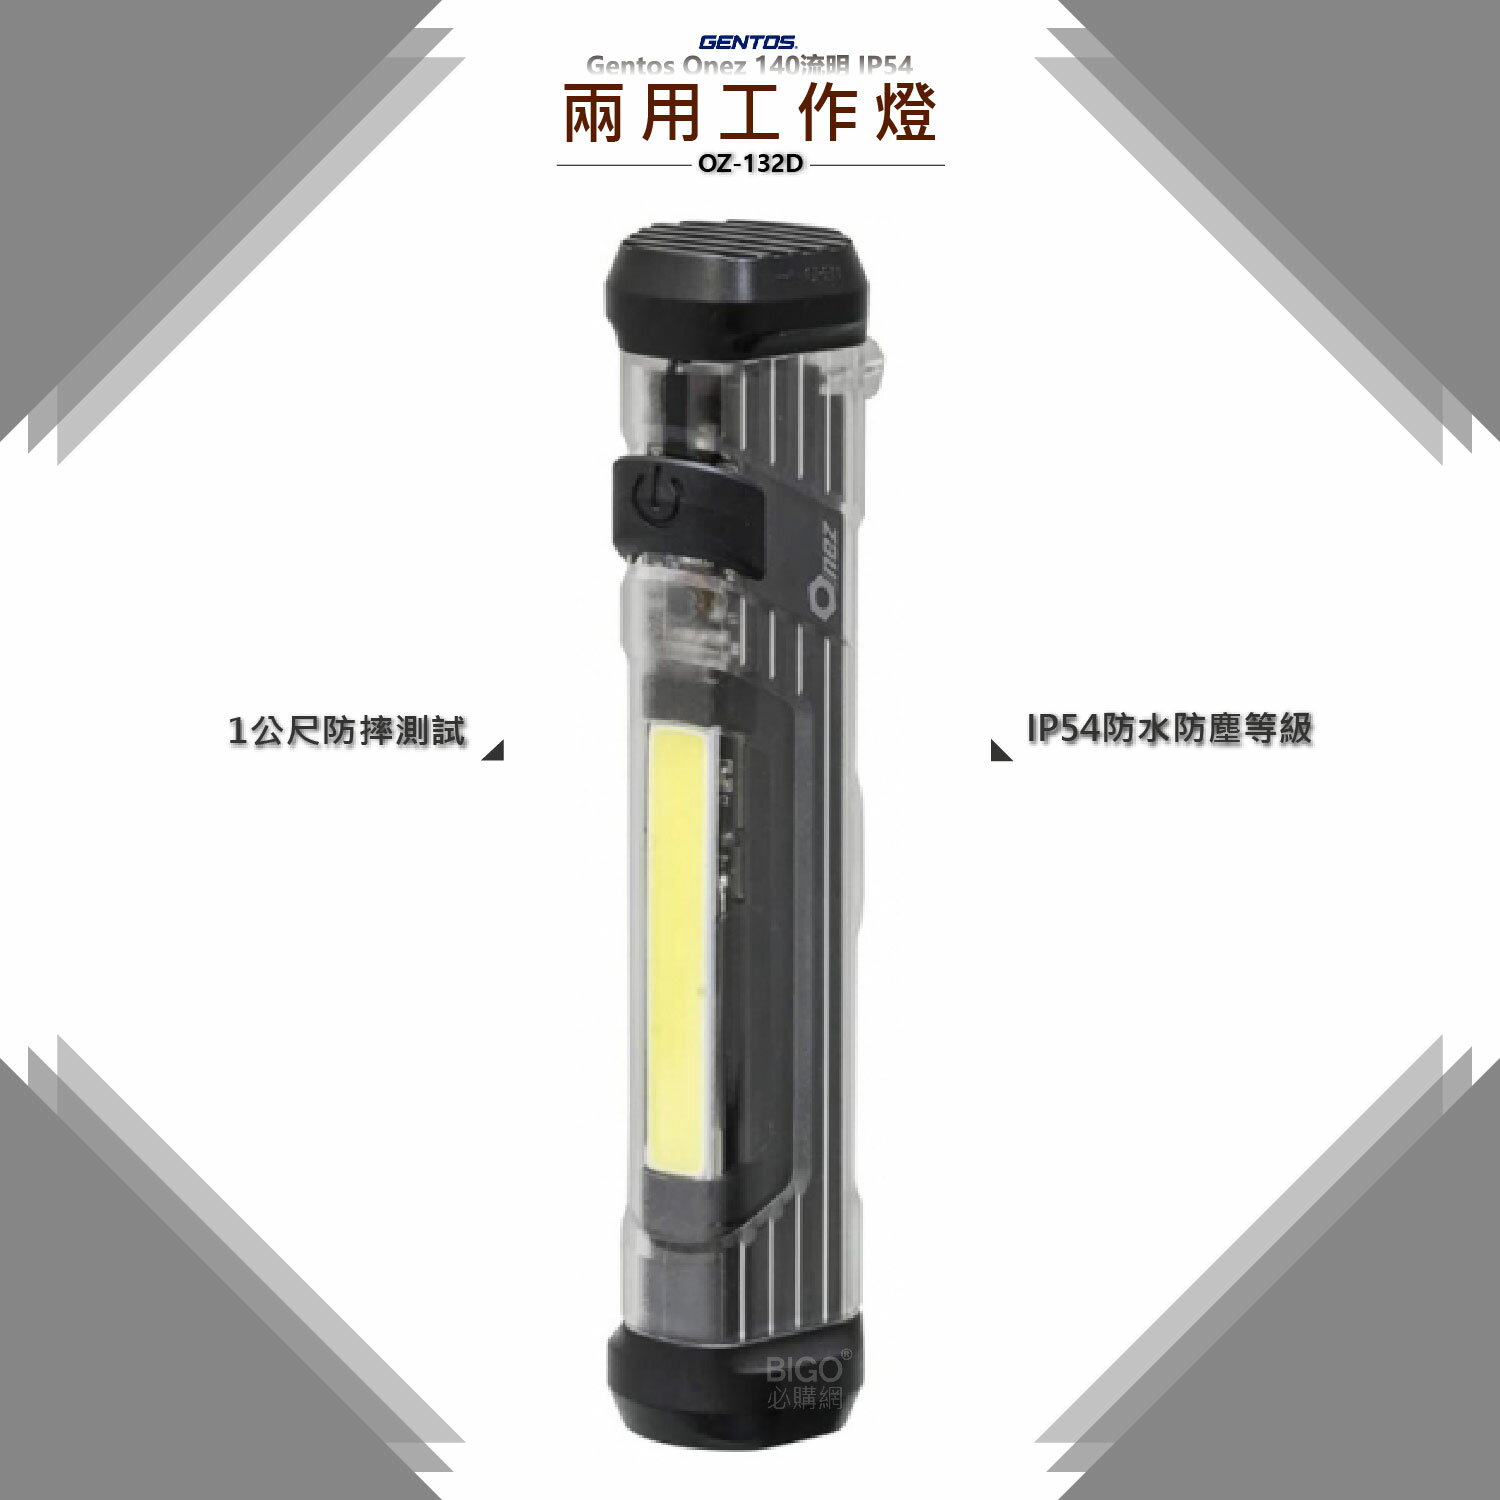 Gentos Onez 【兩用工作燈 OZ-132D】 工作燈 手電筒 照明燈 應急燈 露營燈 強力磁吸設計